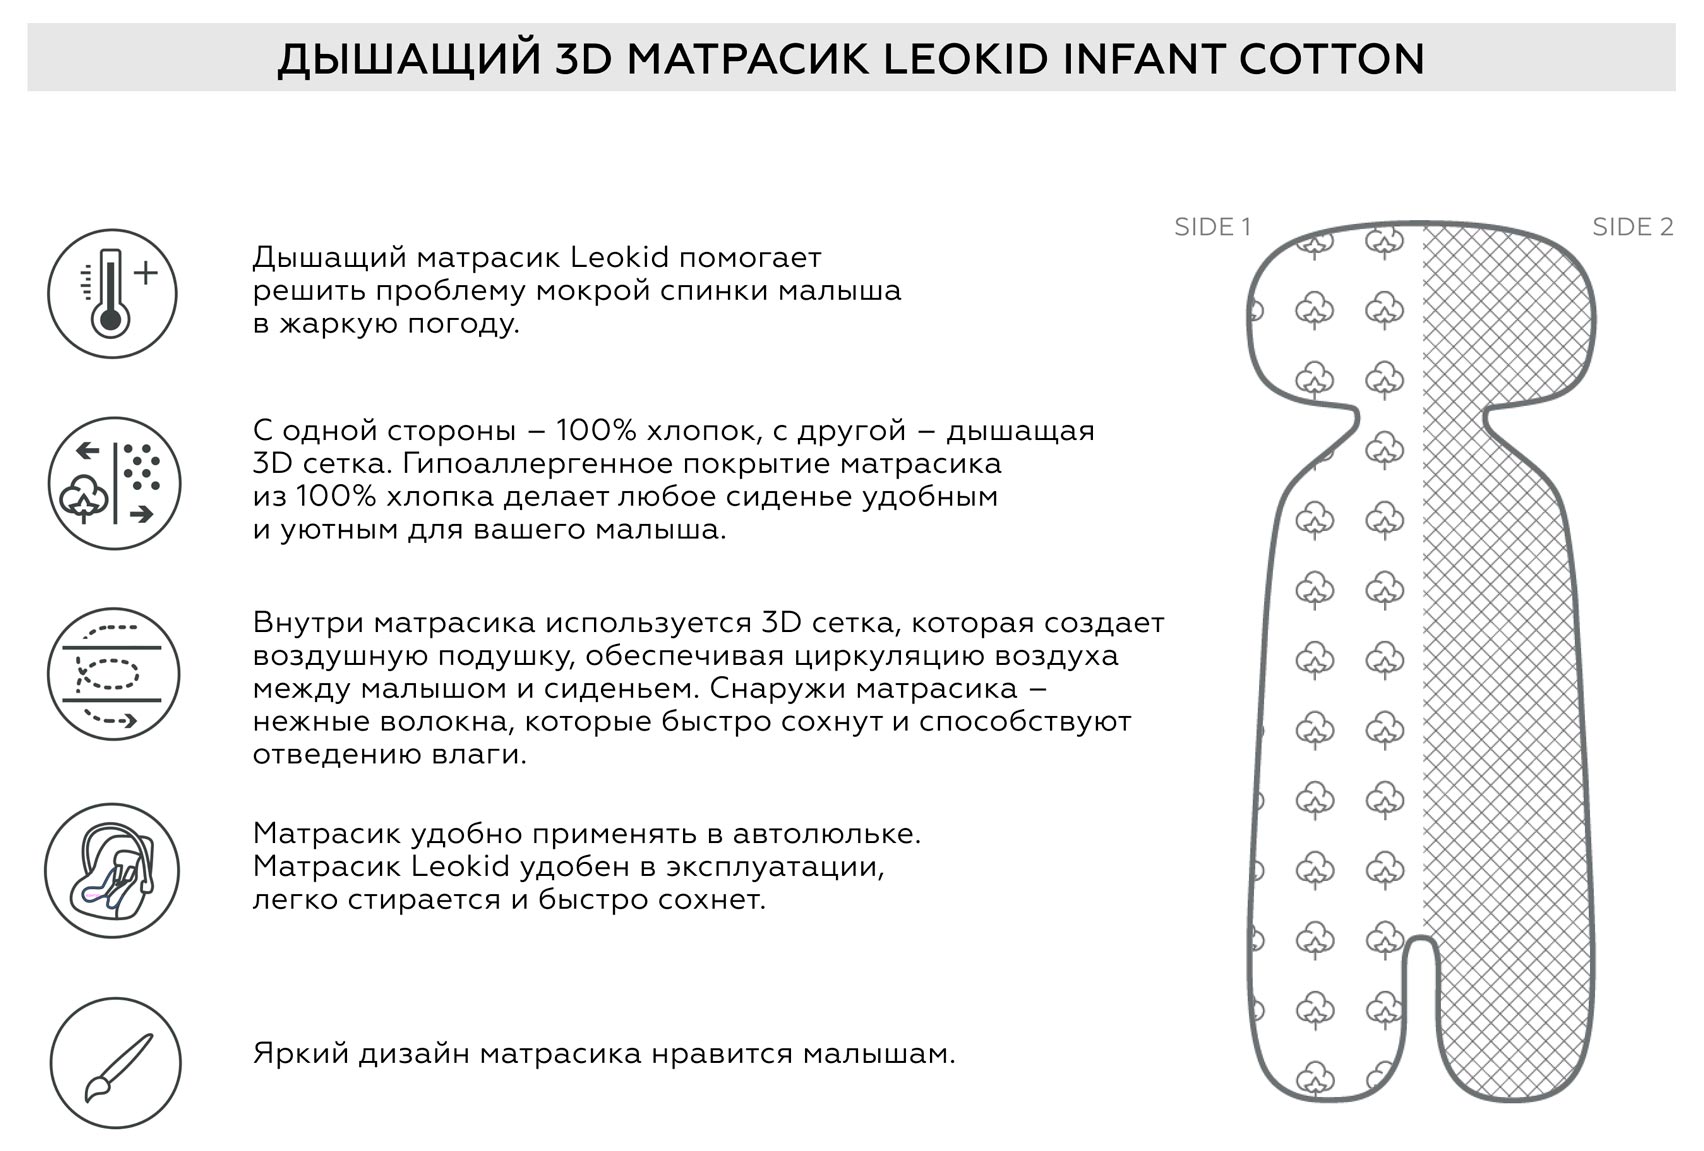 Leokid Дышащий 3D матрасик Infant Cotton использование